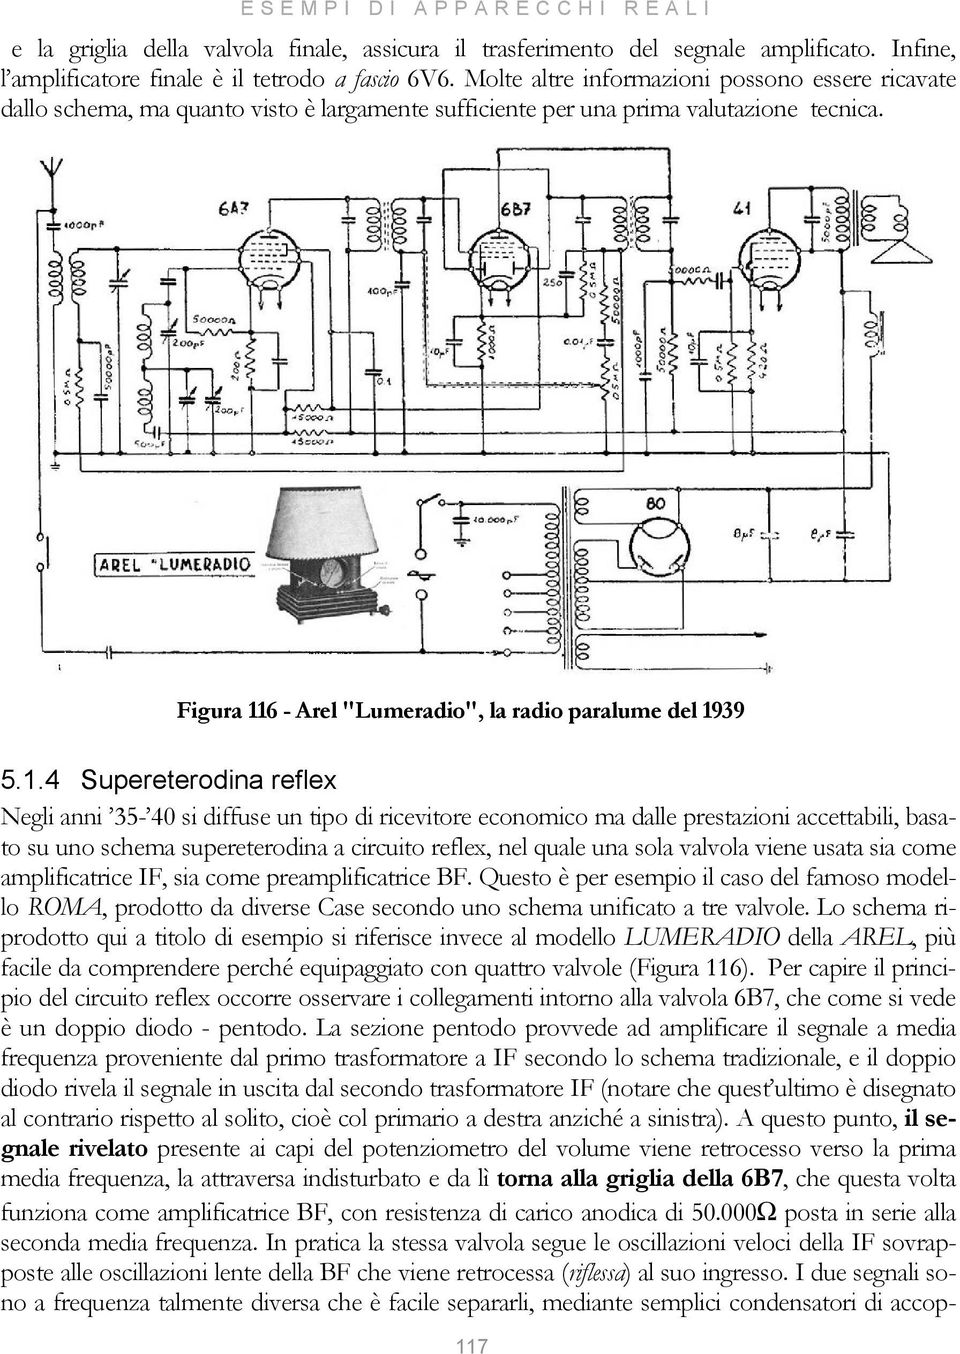 1.4 Supereterodina reflex Negli anni 35-40 si diffuse un tipo di ricevitore economico ma dalle prestazioni accettabili, basato su uno schema supereterodina a circuito reflex, nel quale una sola